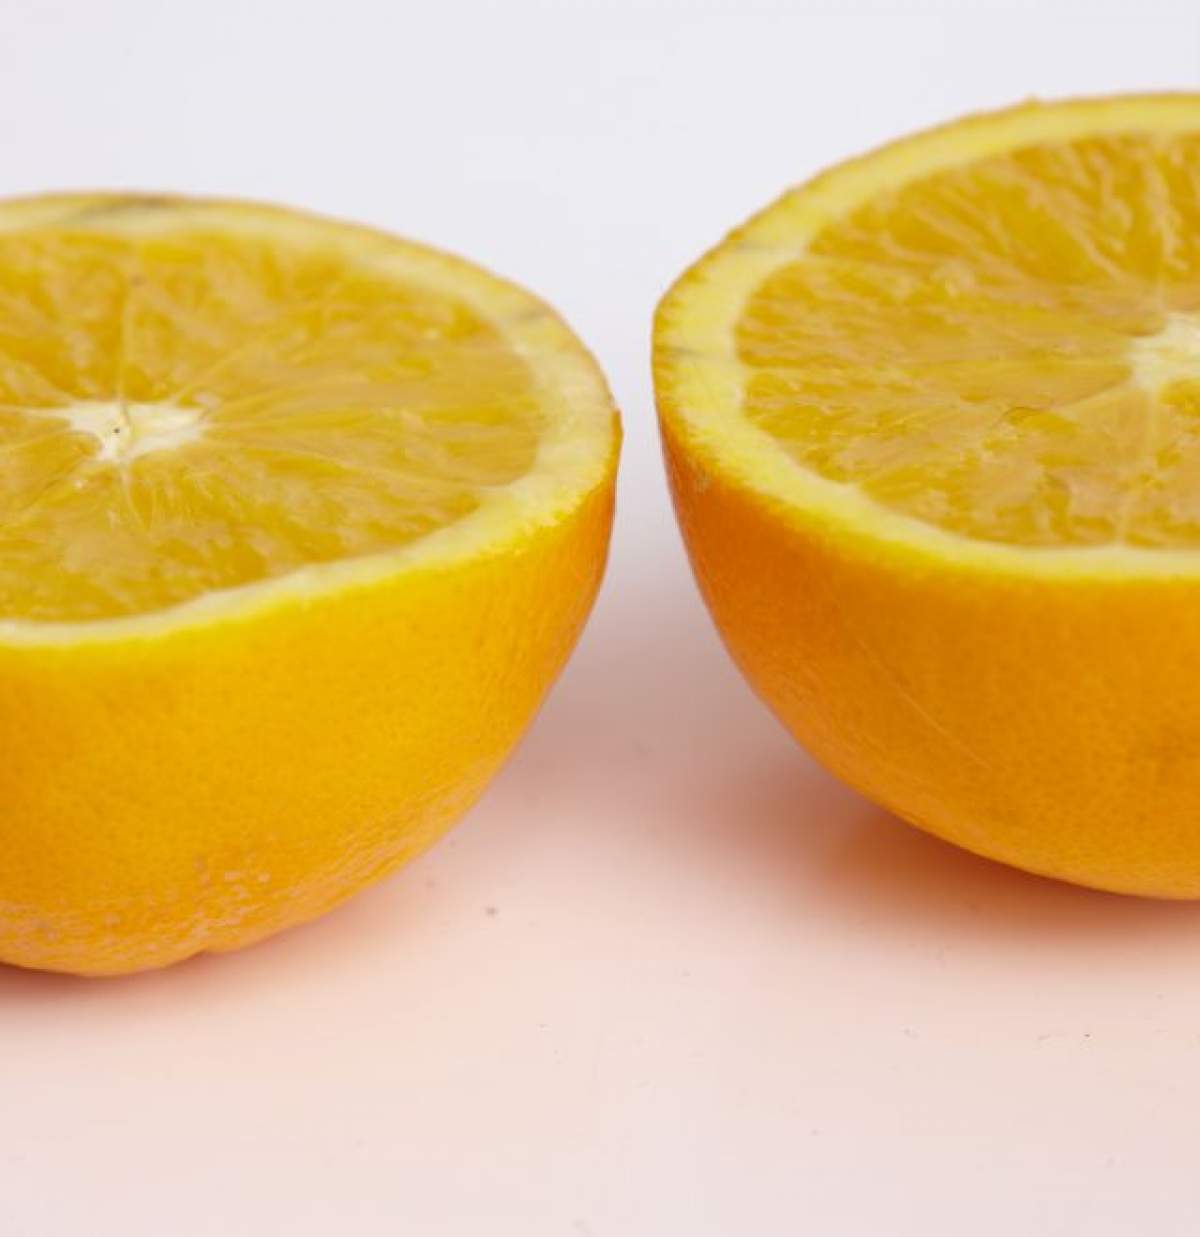 ÎNTREBAREA ZILEI - JOI: Cum îți iluminezi tenul instantaneu? Încearcă astăzi cojile de portocale